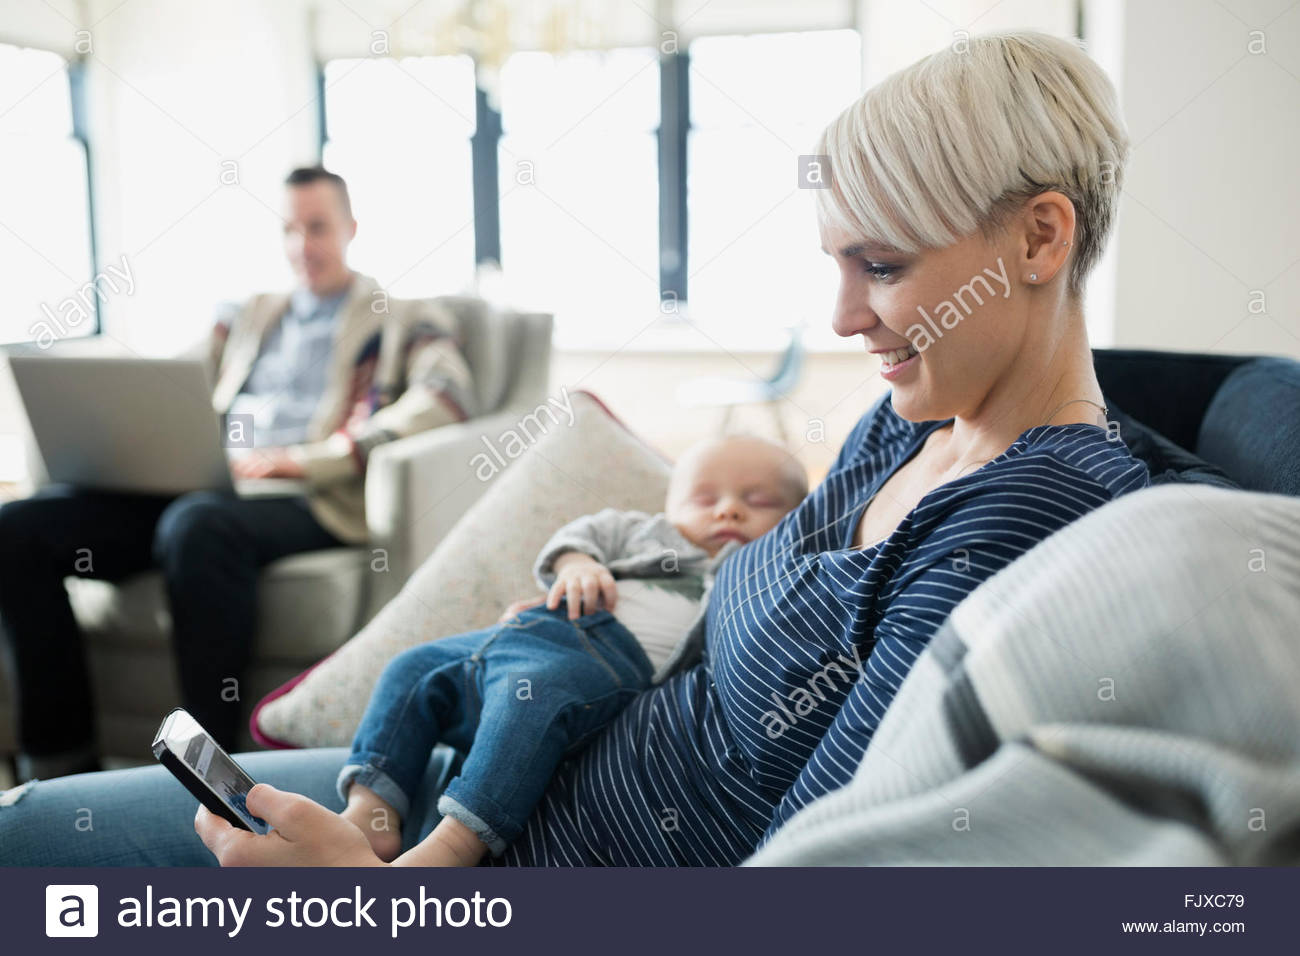 Mother holding baby son et des textos sur canapé Banque D'Images